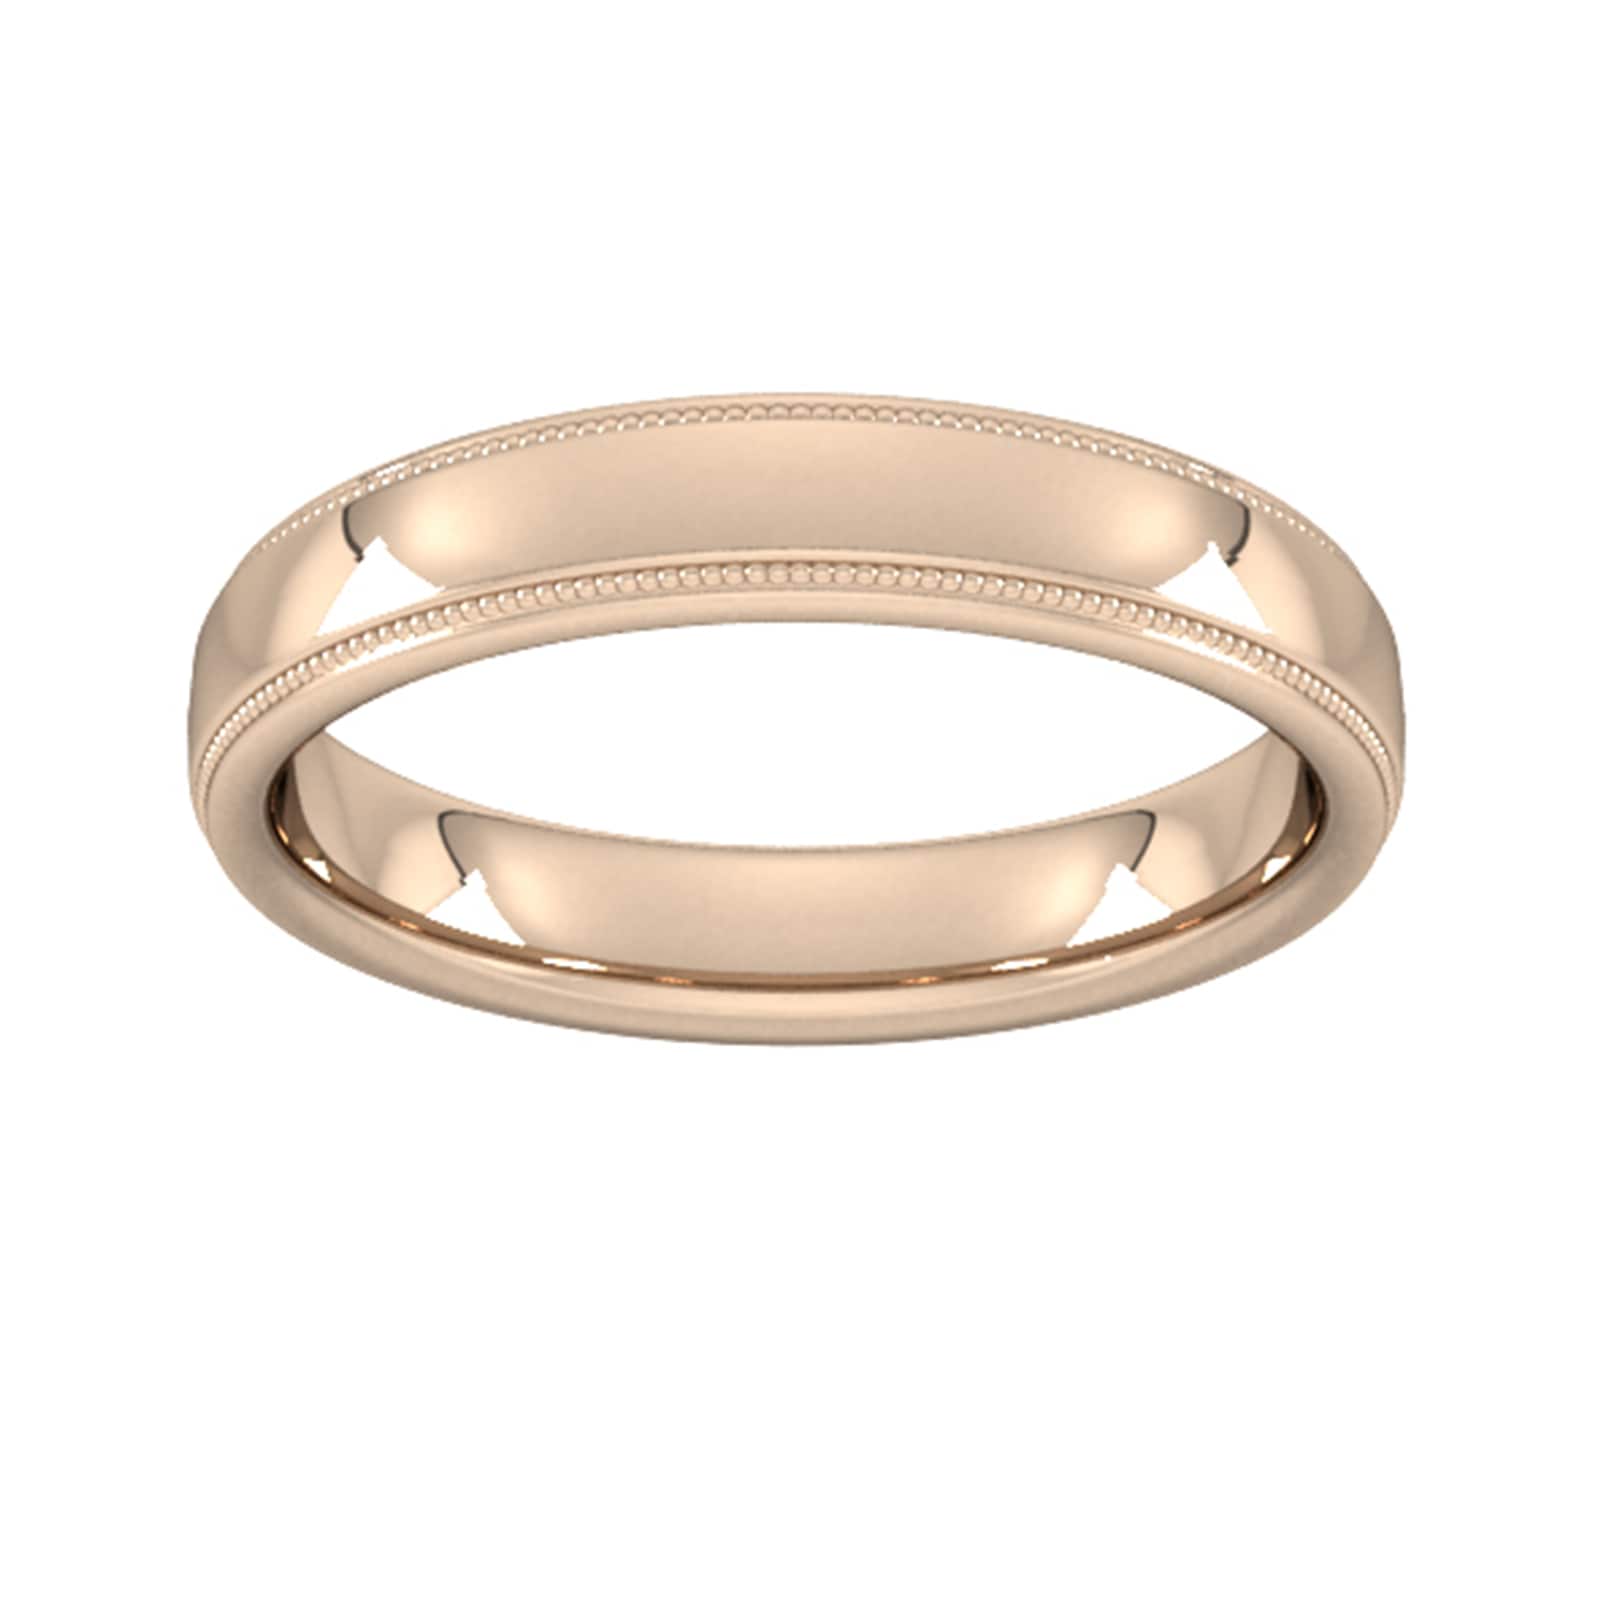 4mm Slight Court Heavy Milgrain Edge Wedding Ring In 18 Carat Rose Gold - Ring Size P